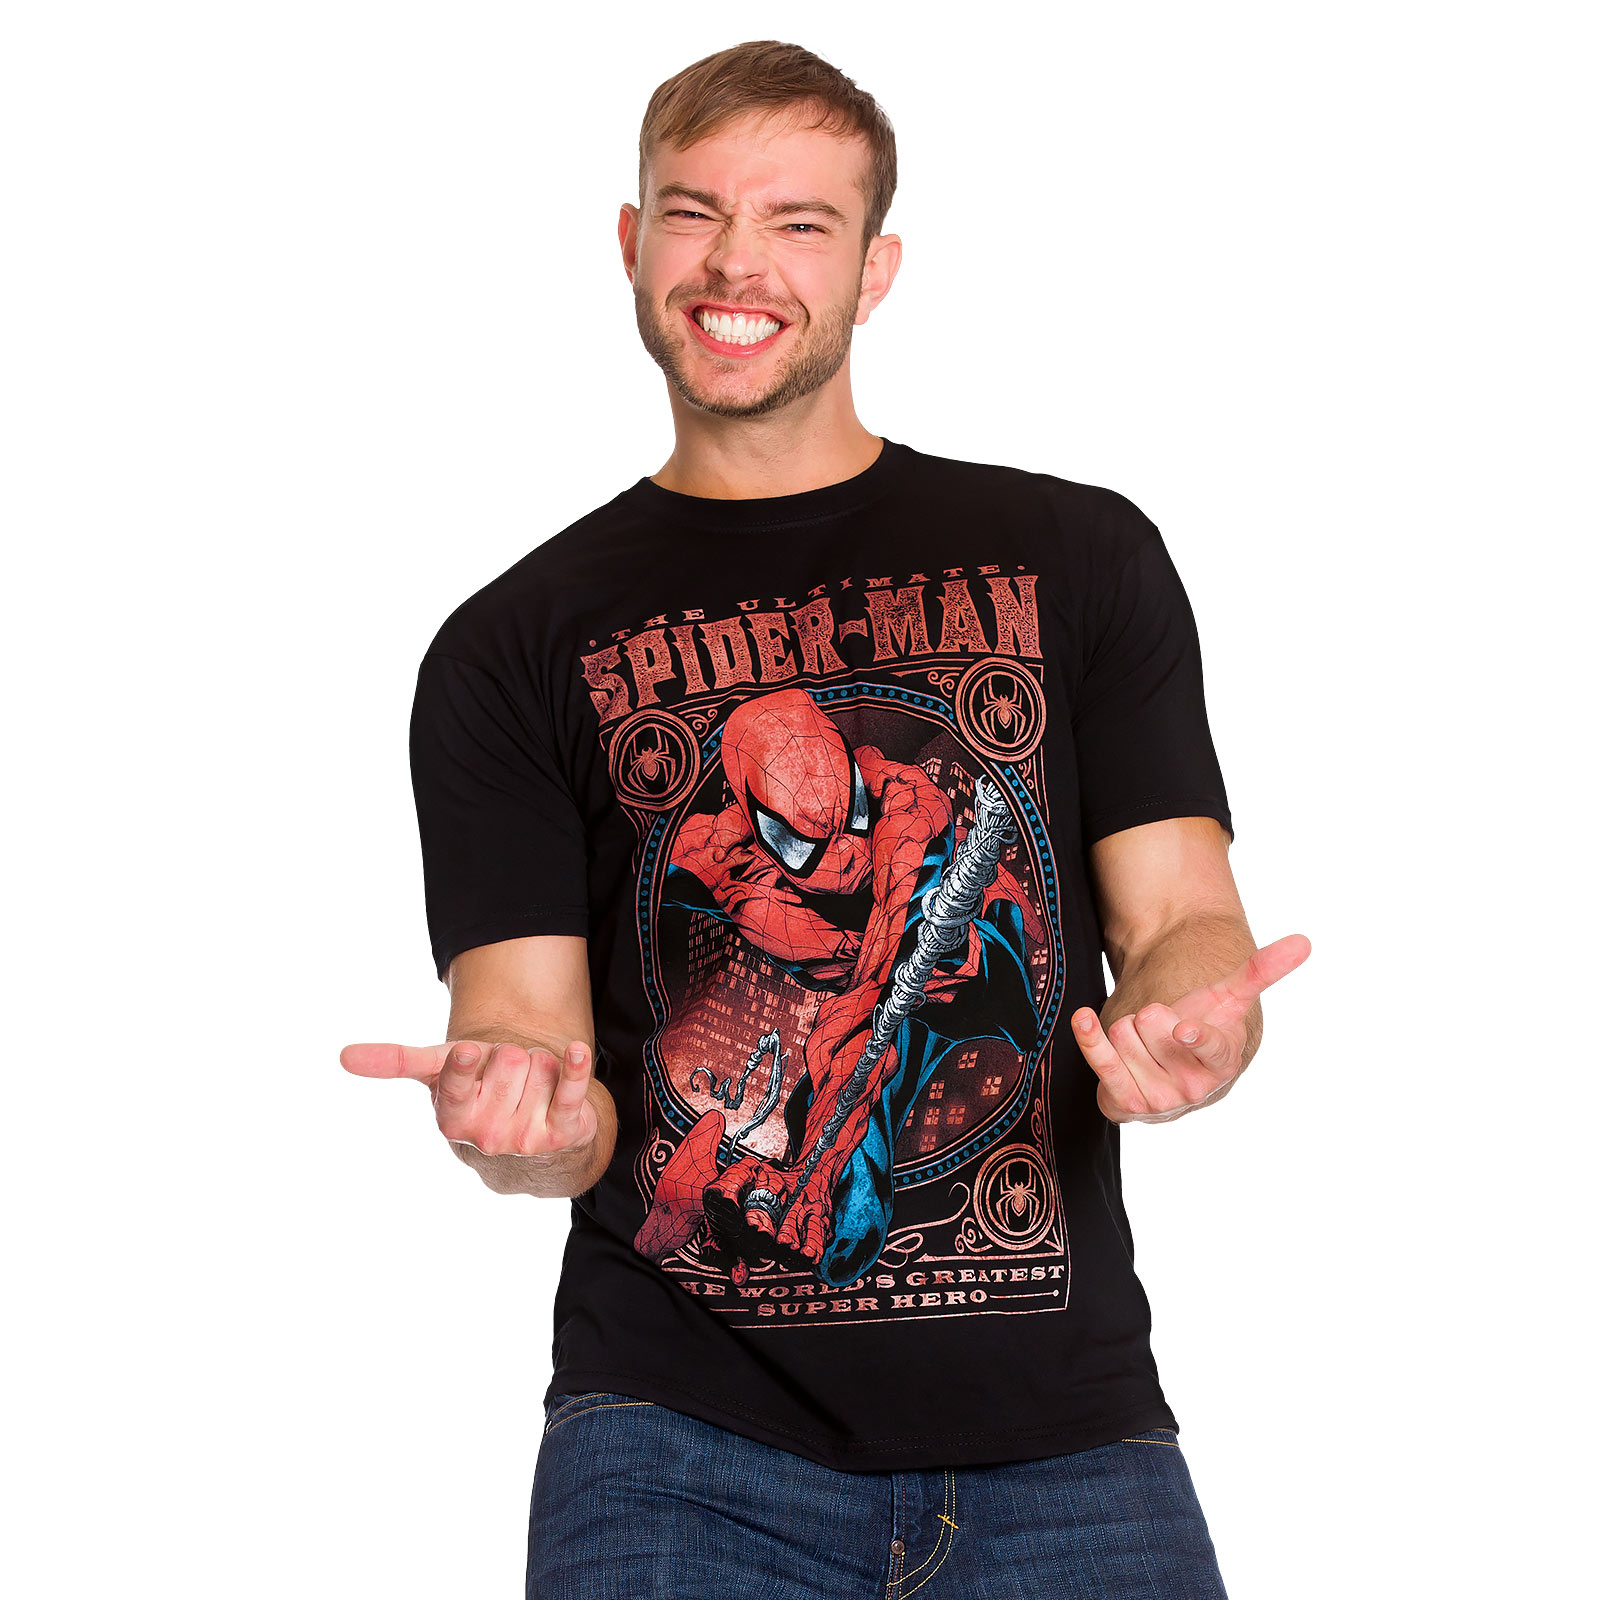 Spider-Man - Grootste Superheld T-shirt zwart